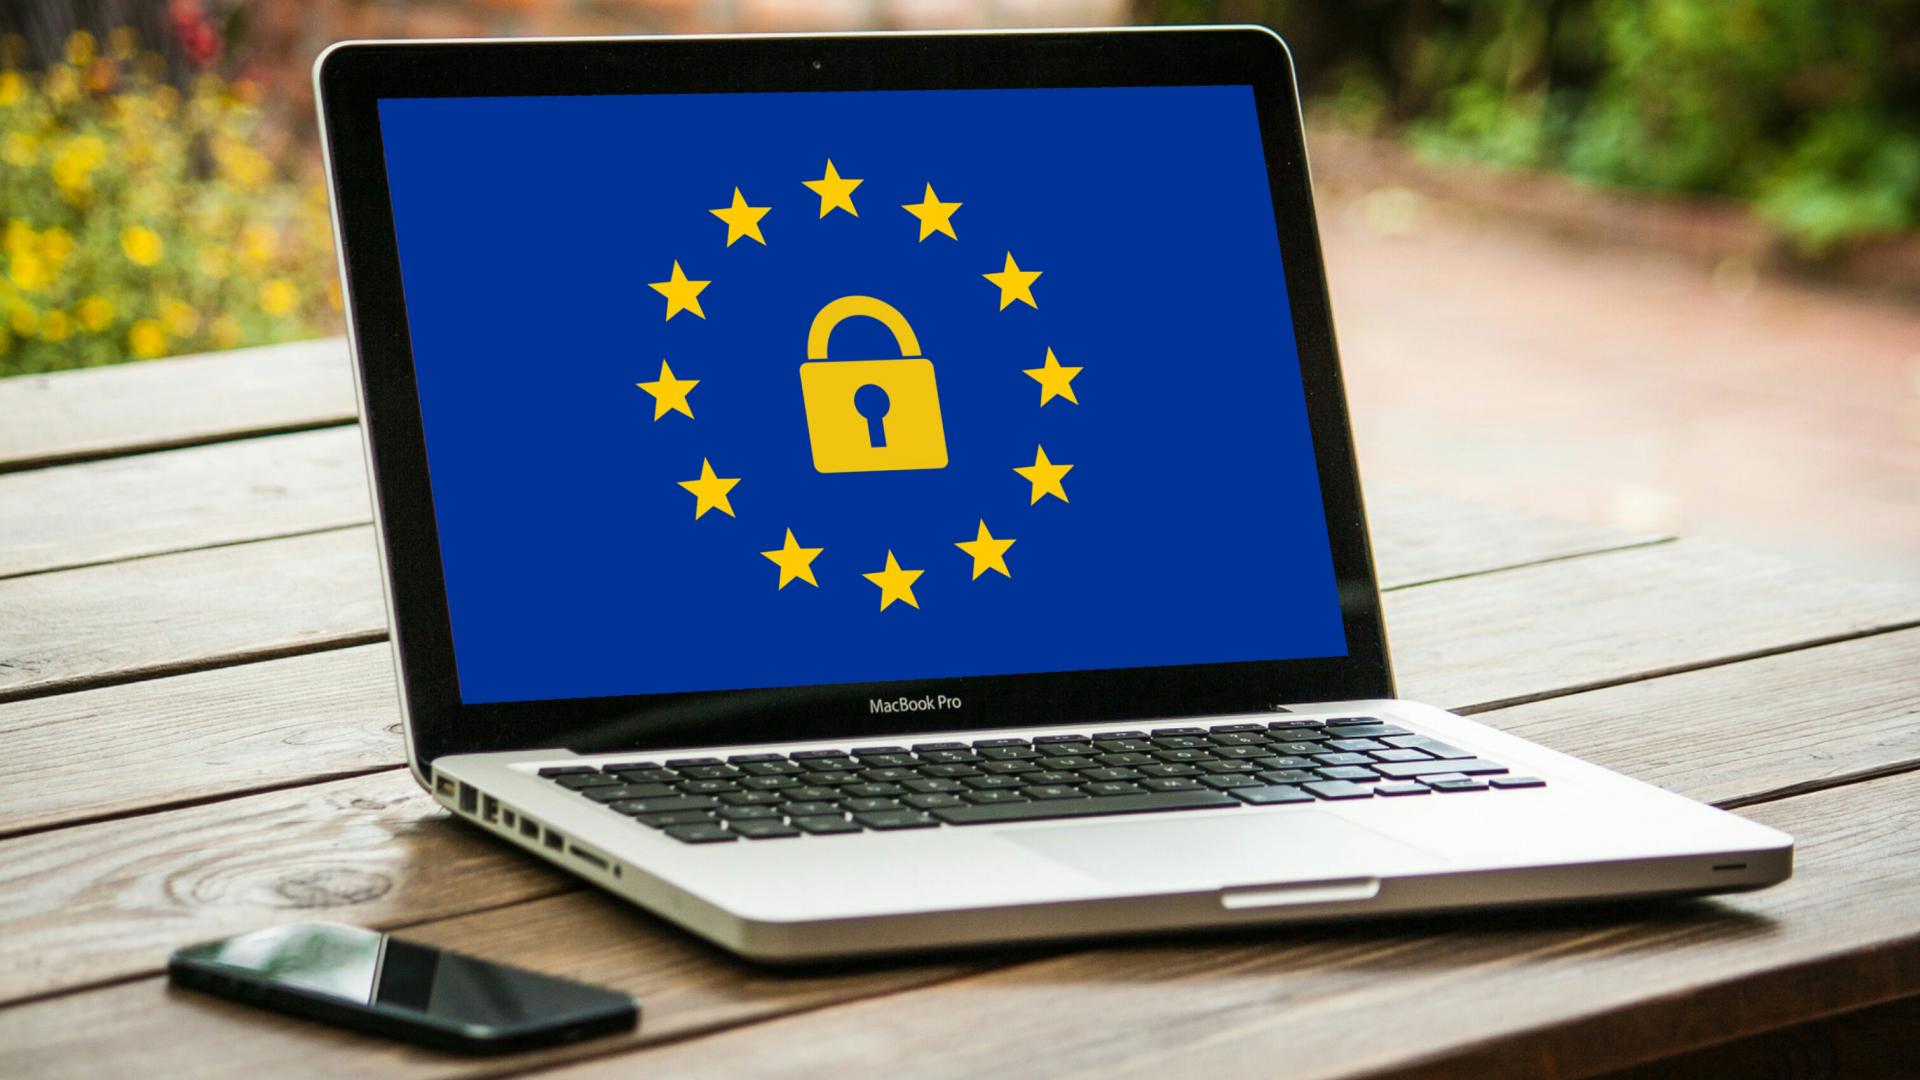 Laptop met een schermafbeelding van een Europese vlag met een geel slot in het midden.